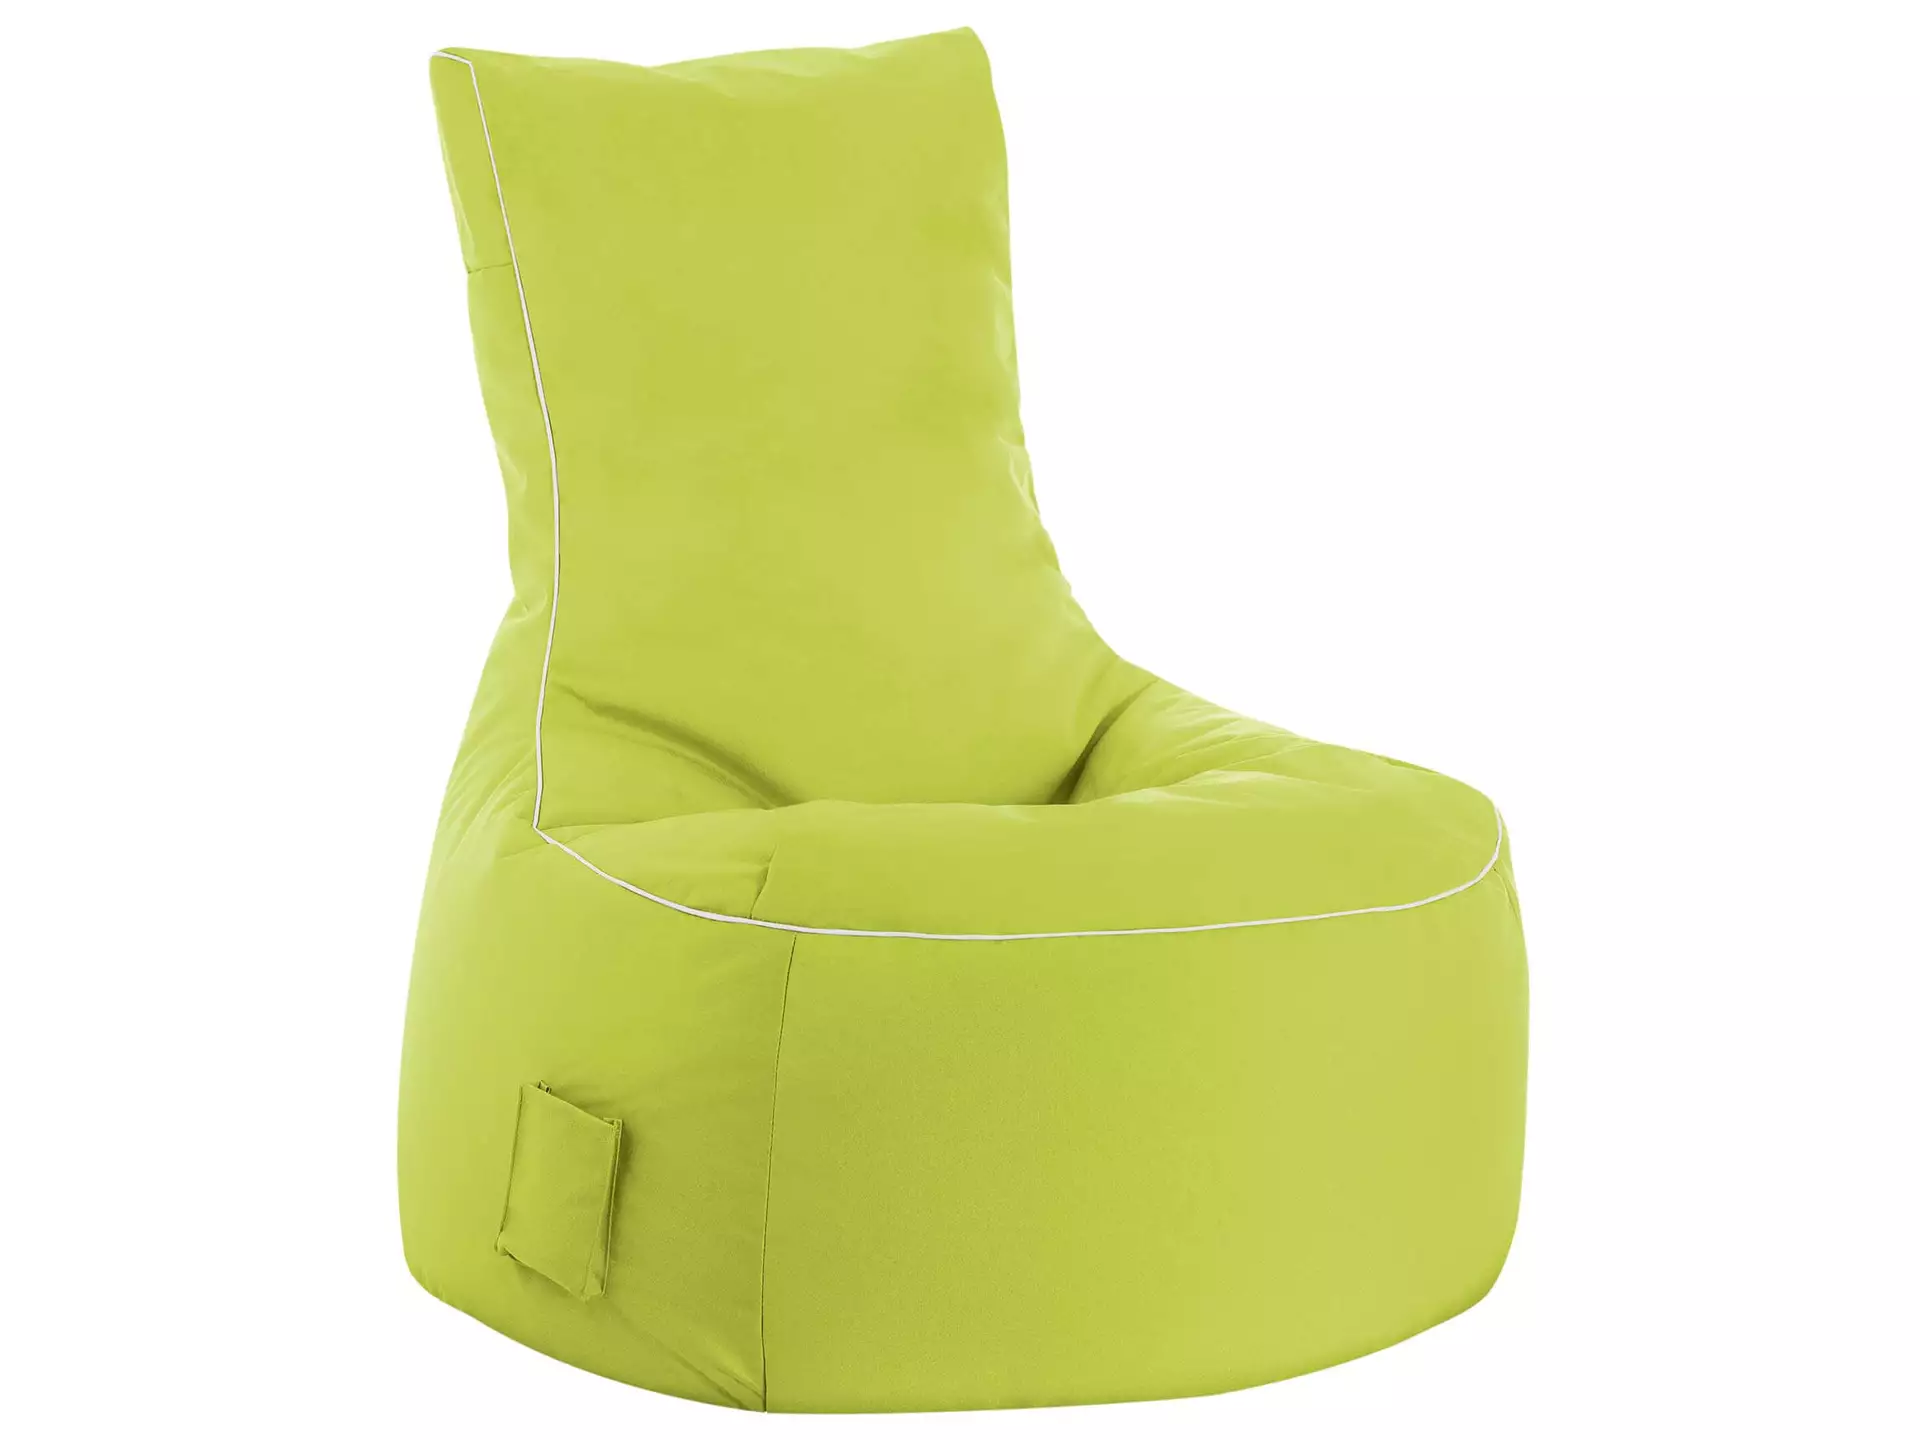 Outdoor-Sitzsack Scuba Swing Magma / Farbe: Grün